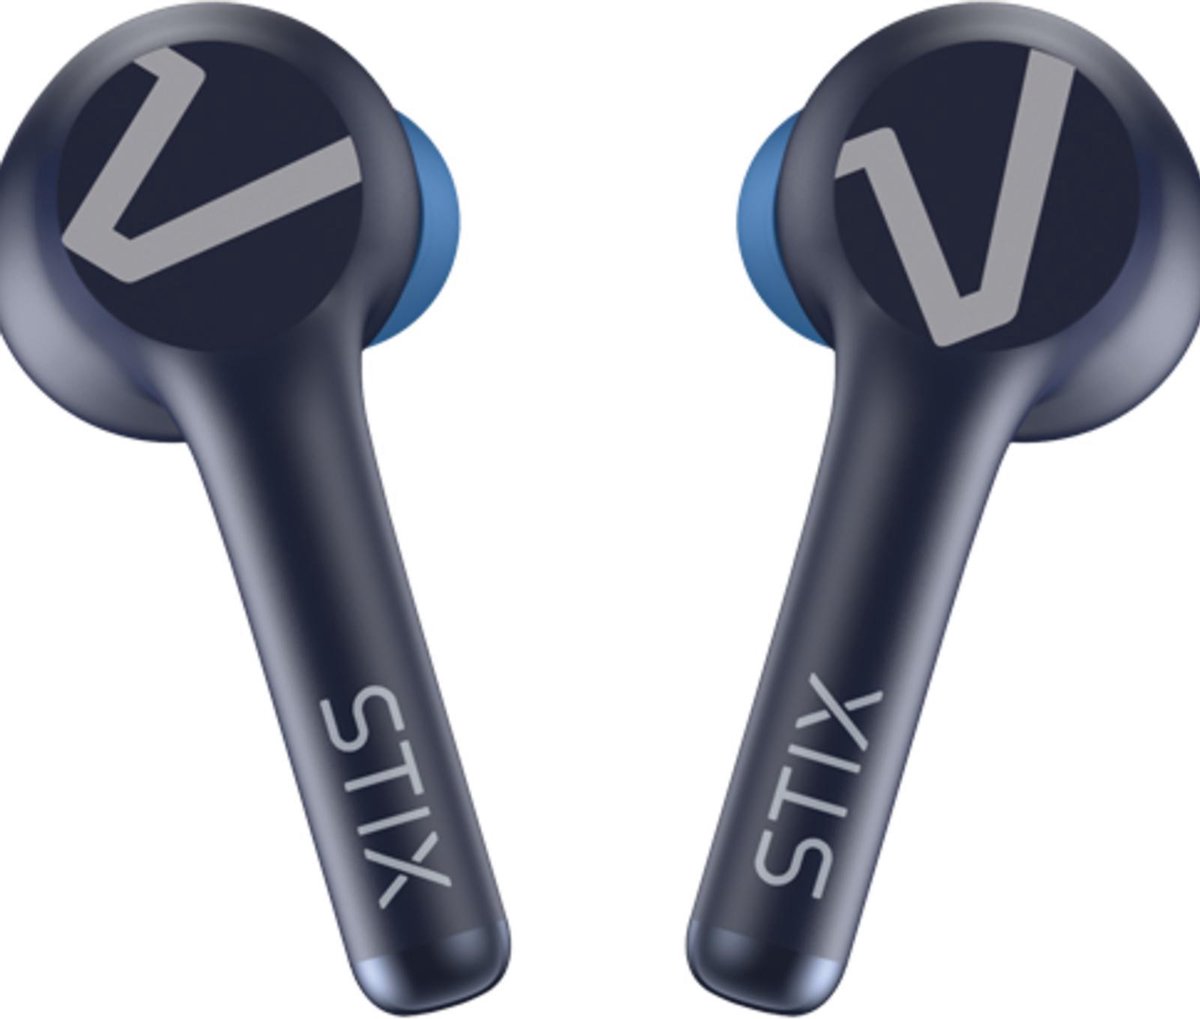 Veho STIX True Wireless Bluetooth Earphones